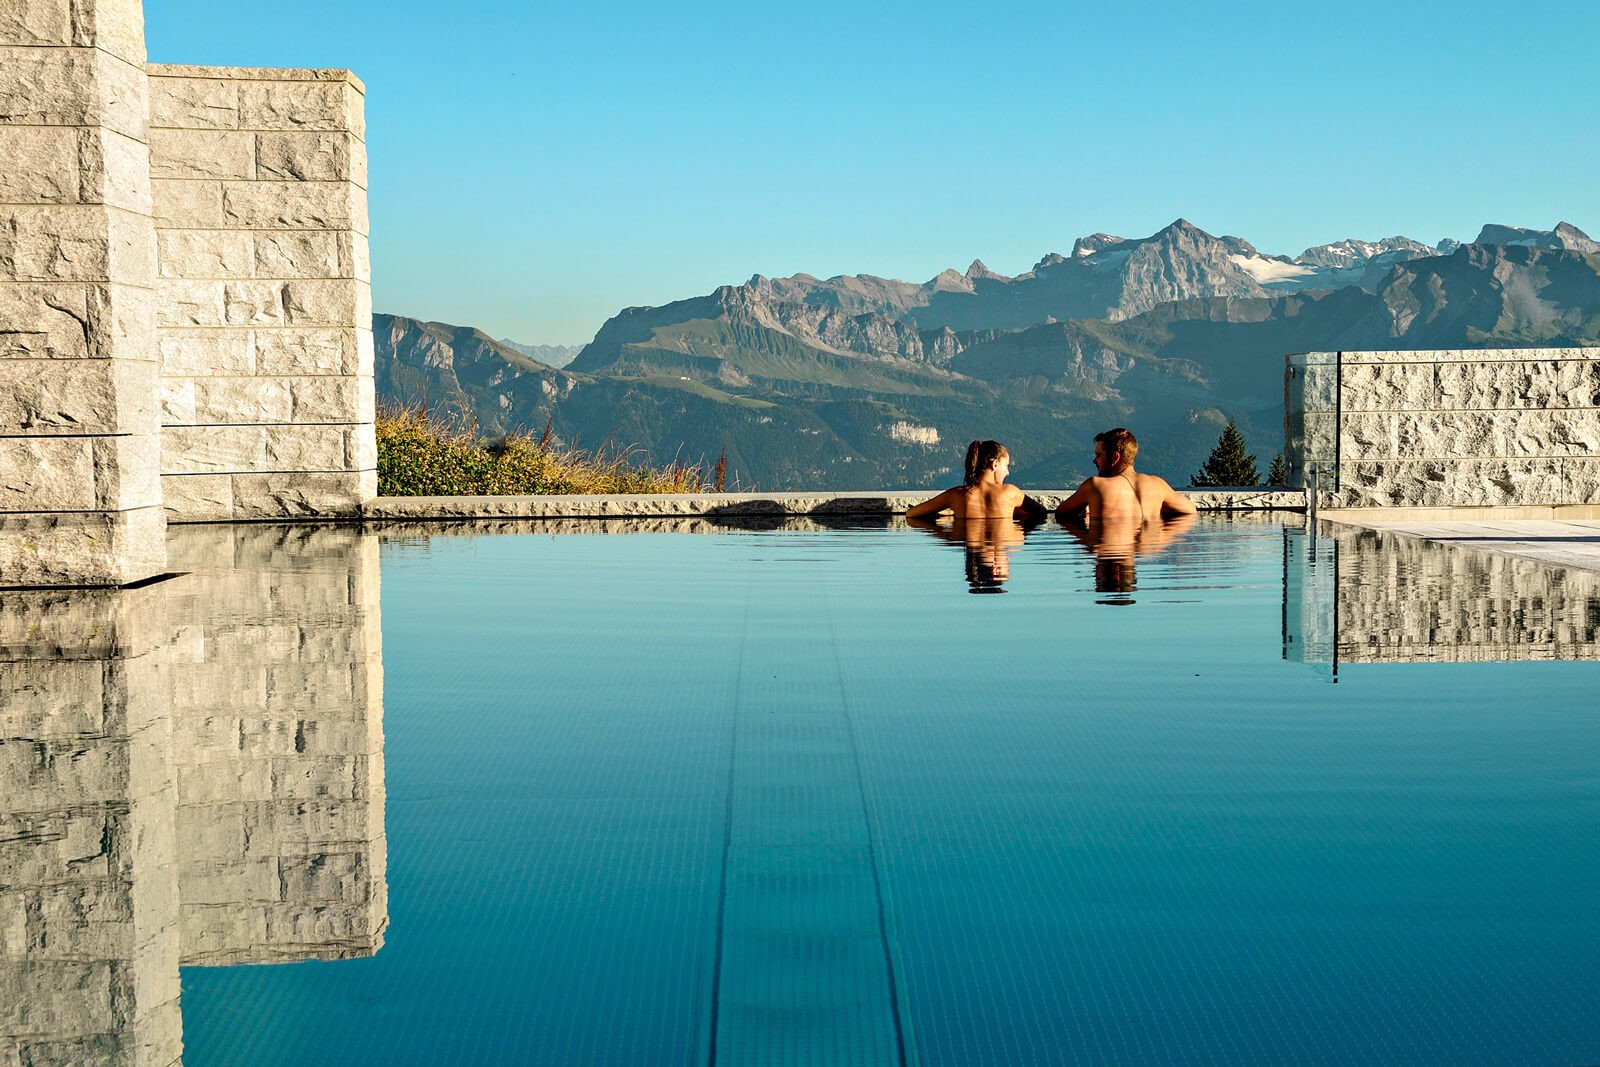 Vista de um dos espaços relaxantes próximos ao Lago Lucerna, na Suíça. (Foto: Divulgação)